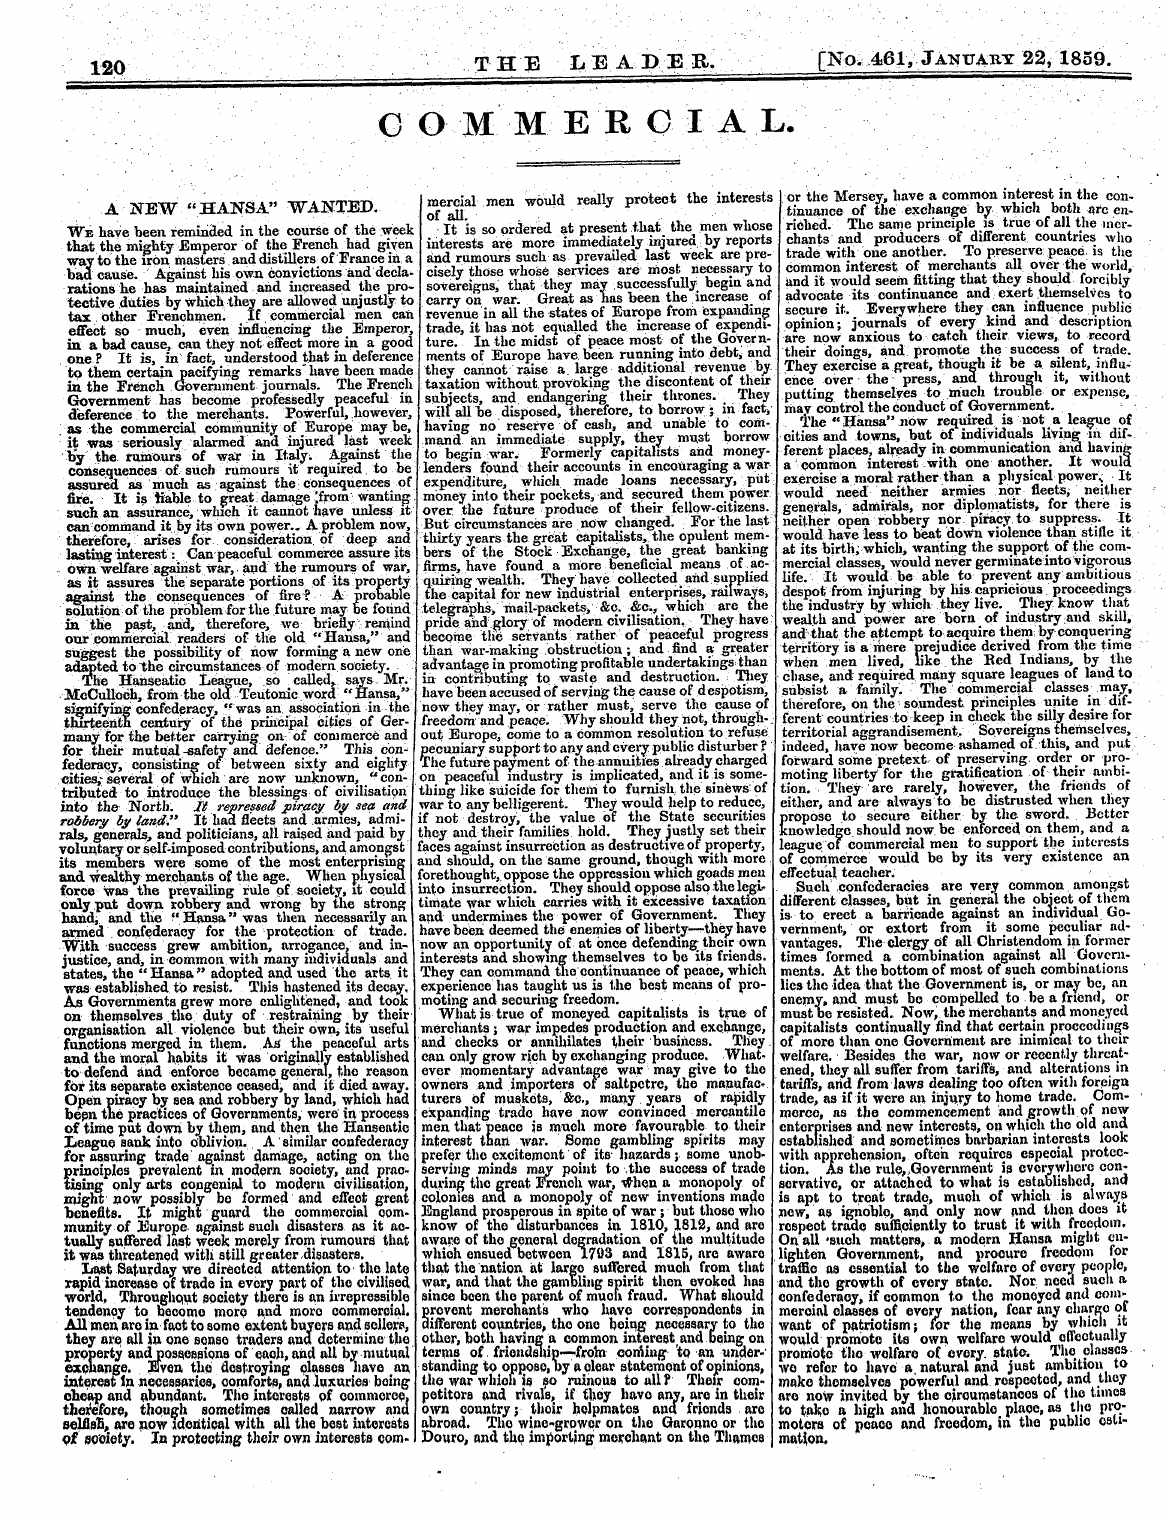 Leader (1850-1860): jS F Y, 2nd edition - O O M M E R 0 I A L.